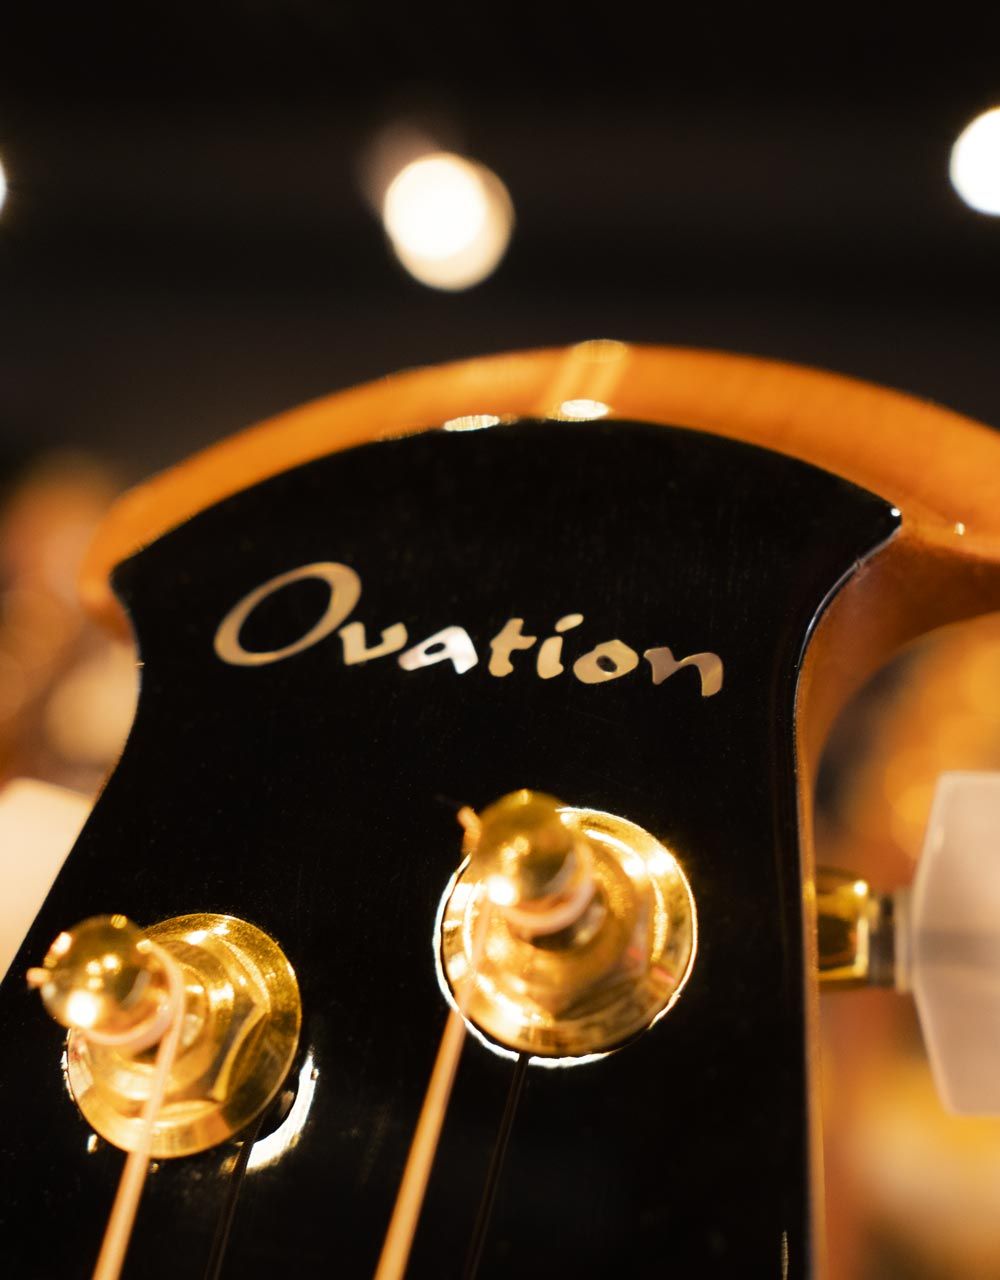 Электроакустическая гитара Ovation C1778LX-5 Custom Elite LX Mid Cutaway - купить в "Гитарном Клубе"